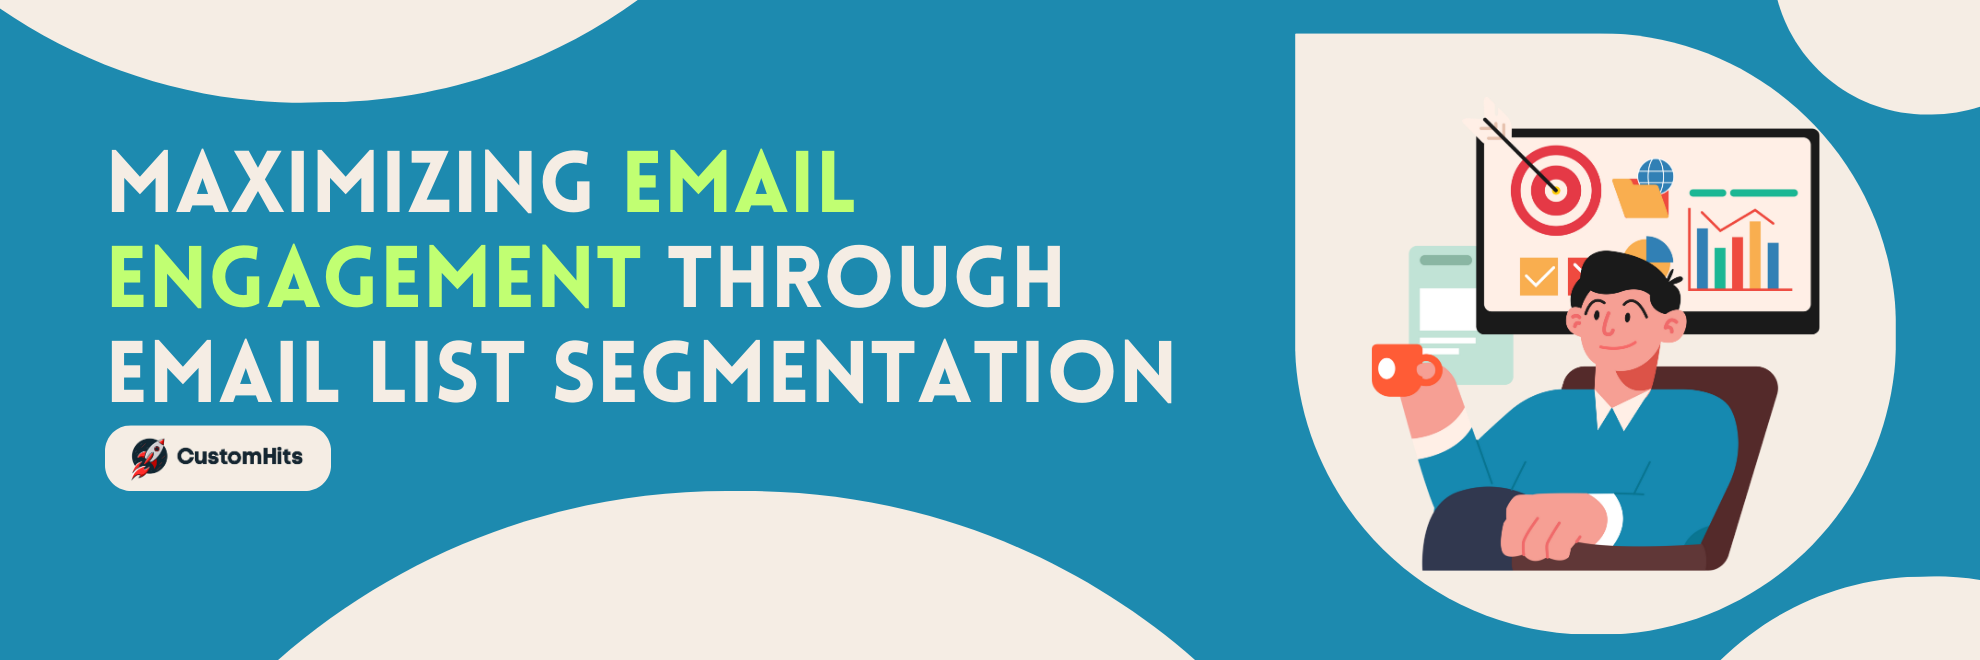 Maximizing Email Engagement Through Email List Segmentation